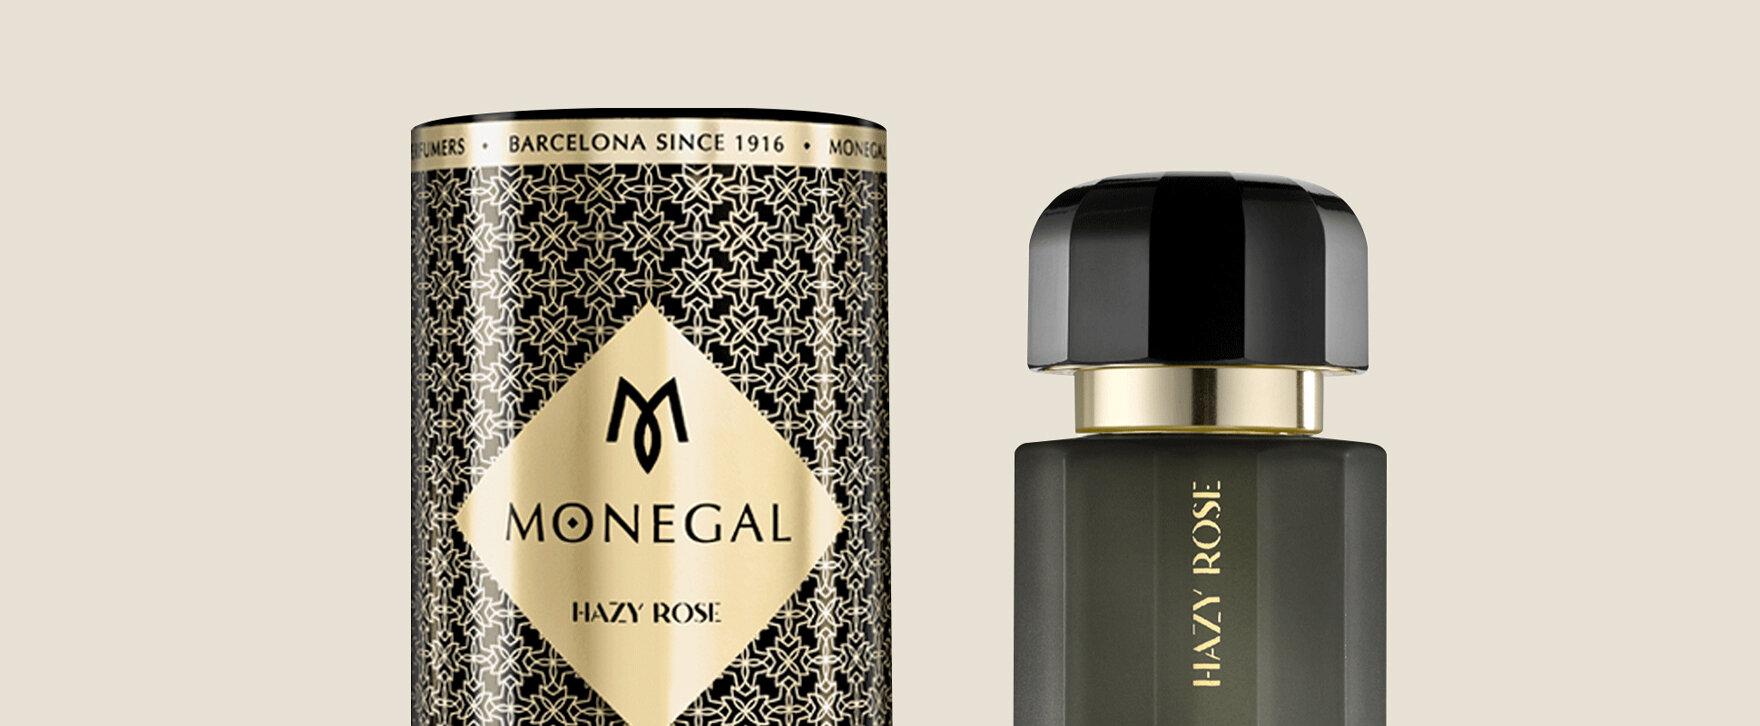 Ramón Monegal “Hazy Rose” – New Rose Fragrance for Men and Women